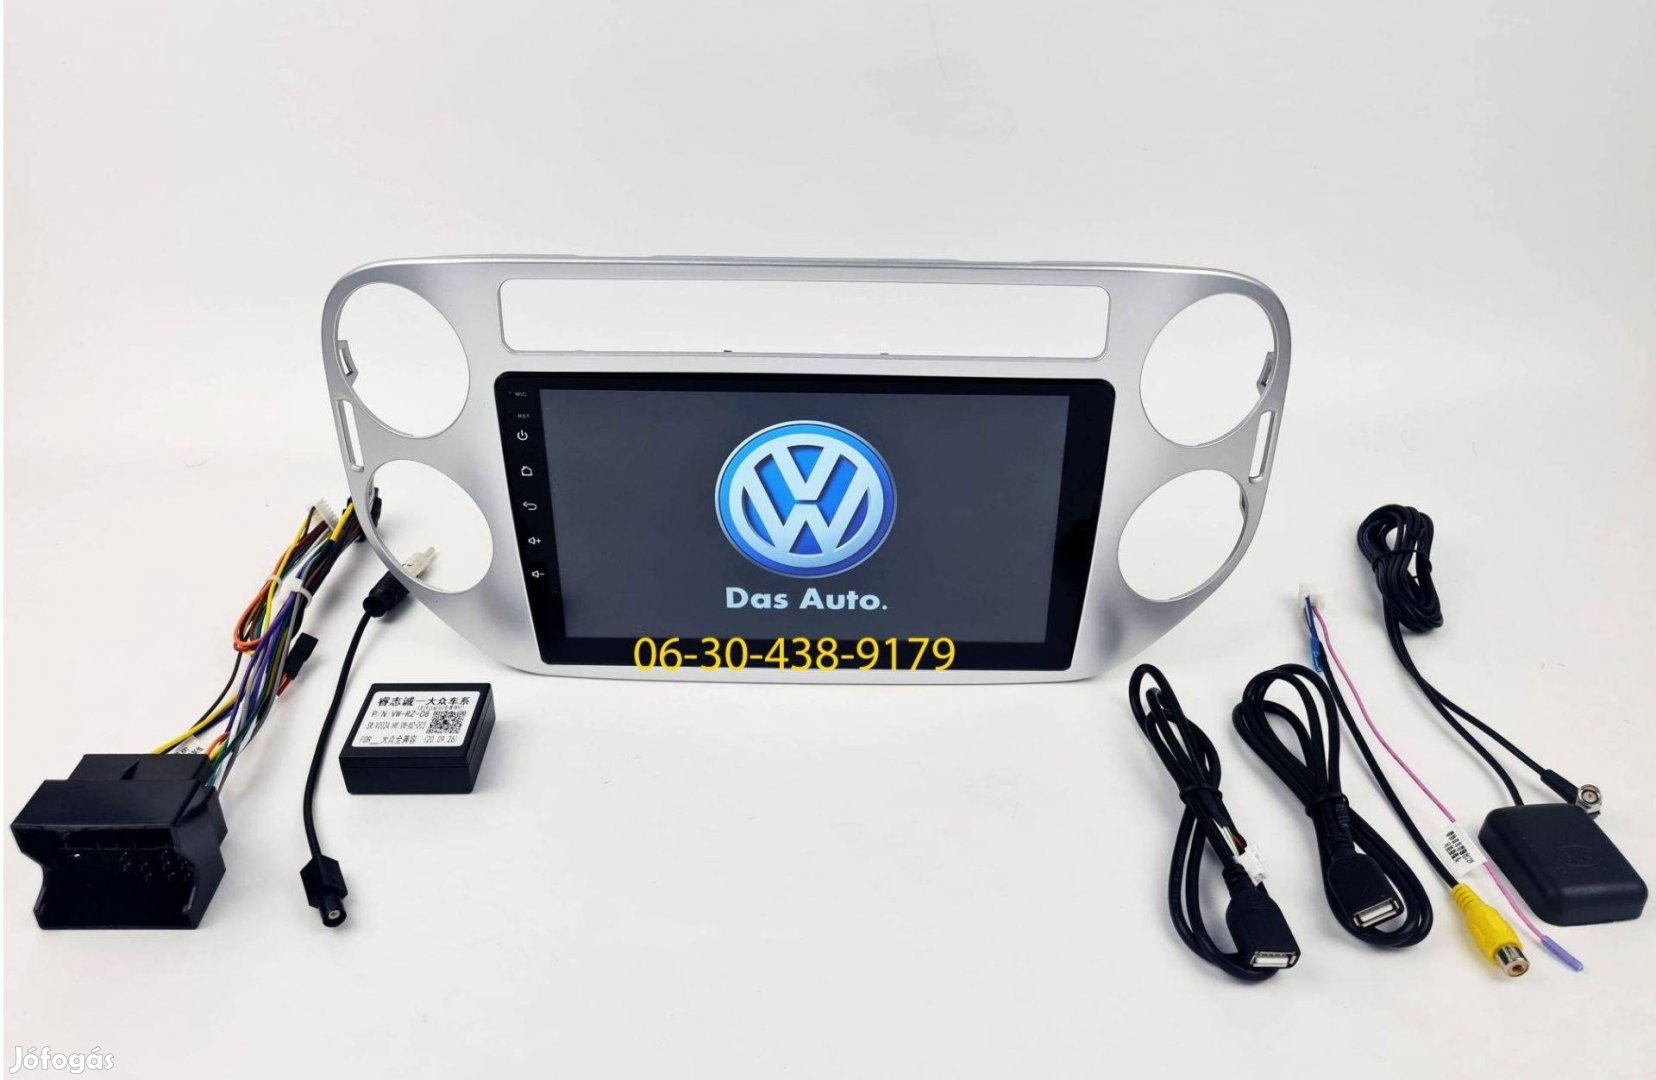 VW Tiguan Golf Plus Android autórádió multimédia fejegység navi 1-6GB